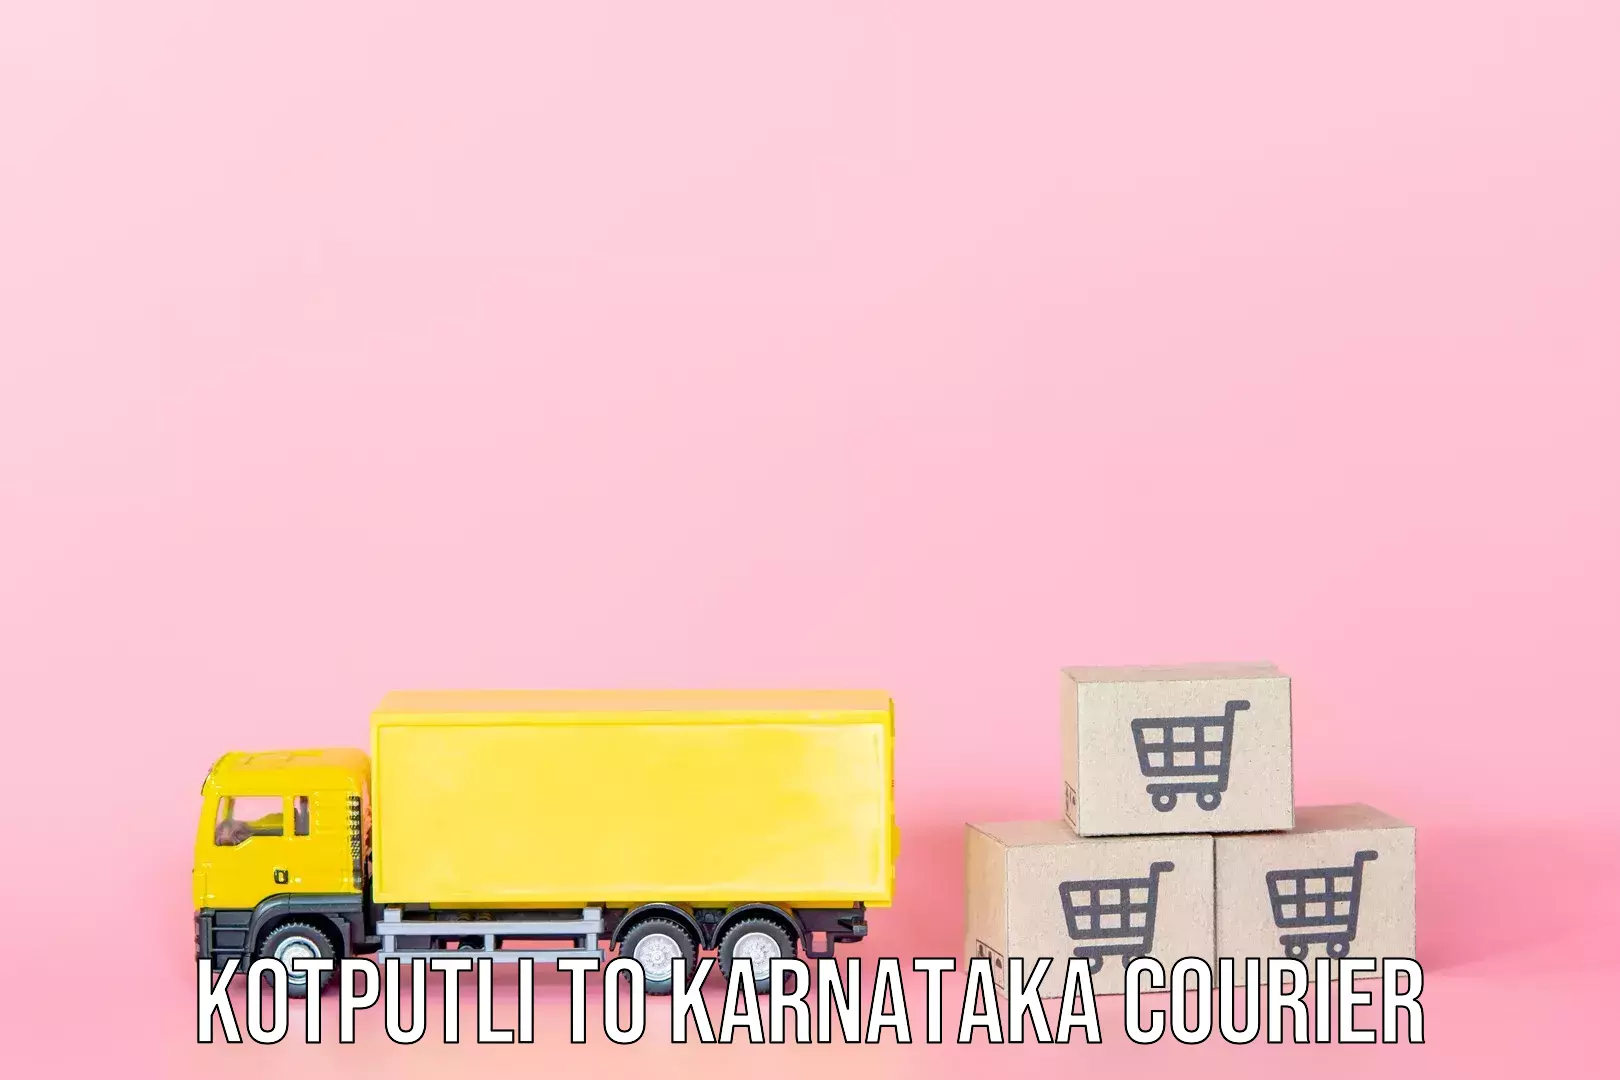 Personalized luggage shipping Kotputli to Virajpet